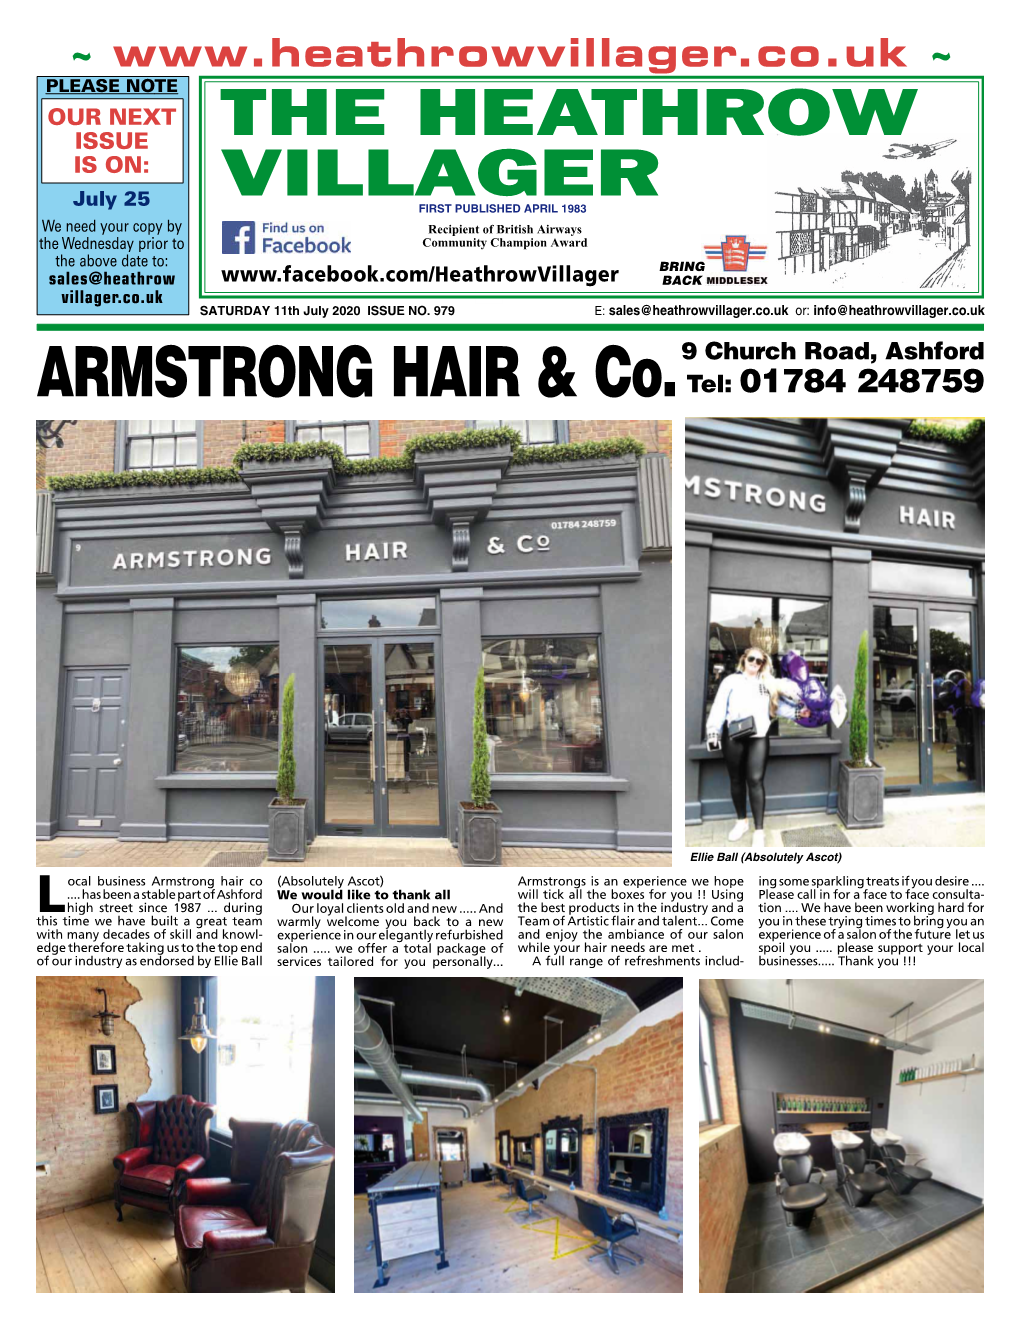 ARMSTRONG HAIR & Co.9 Church Road, Ashford